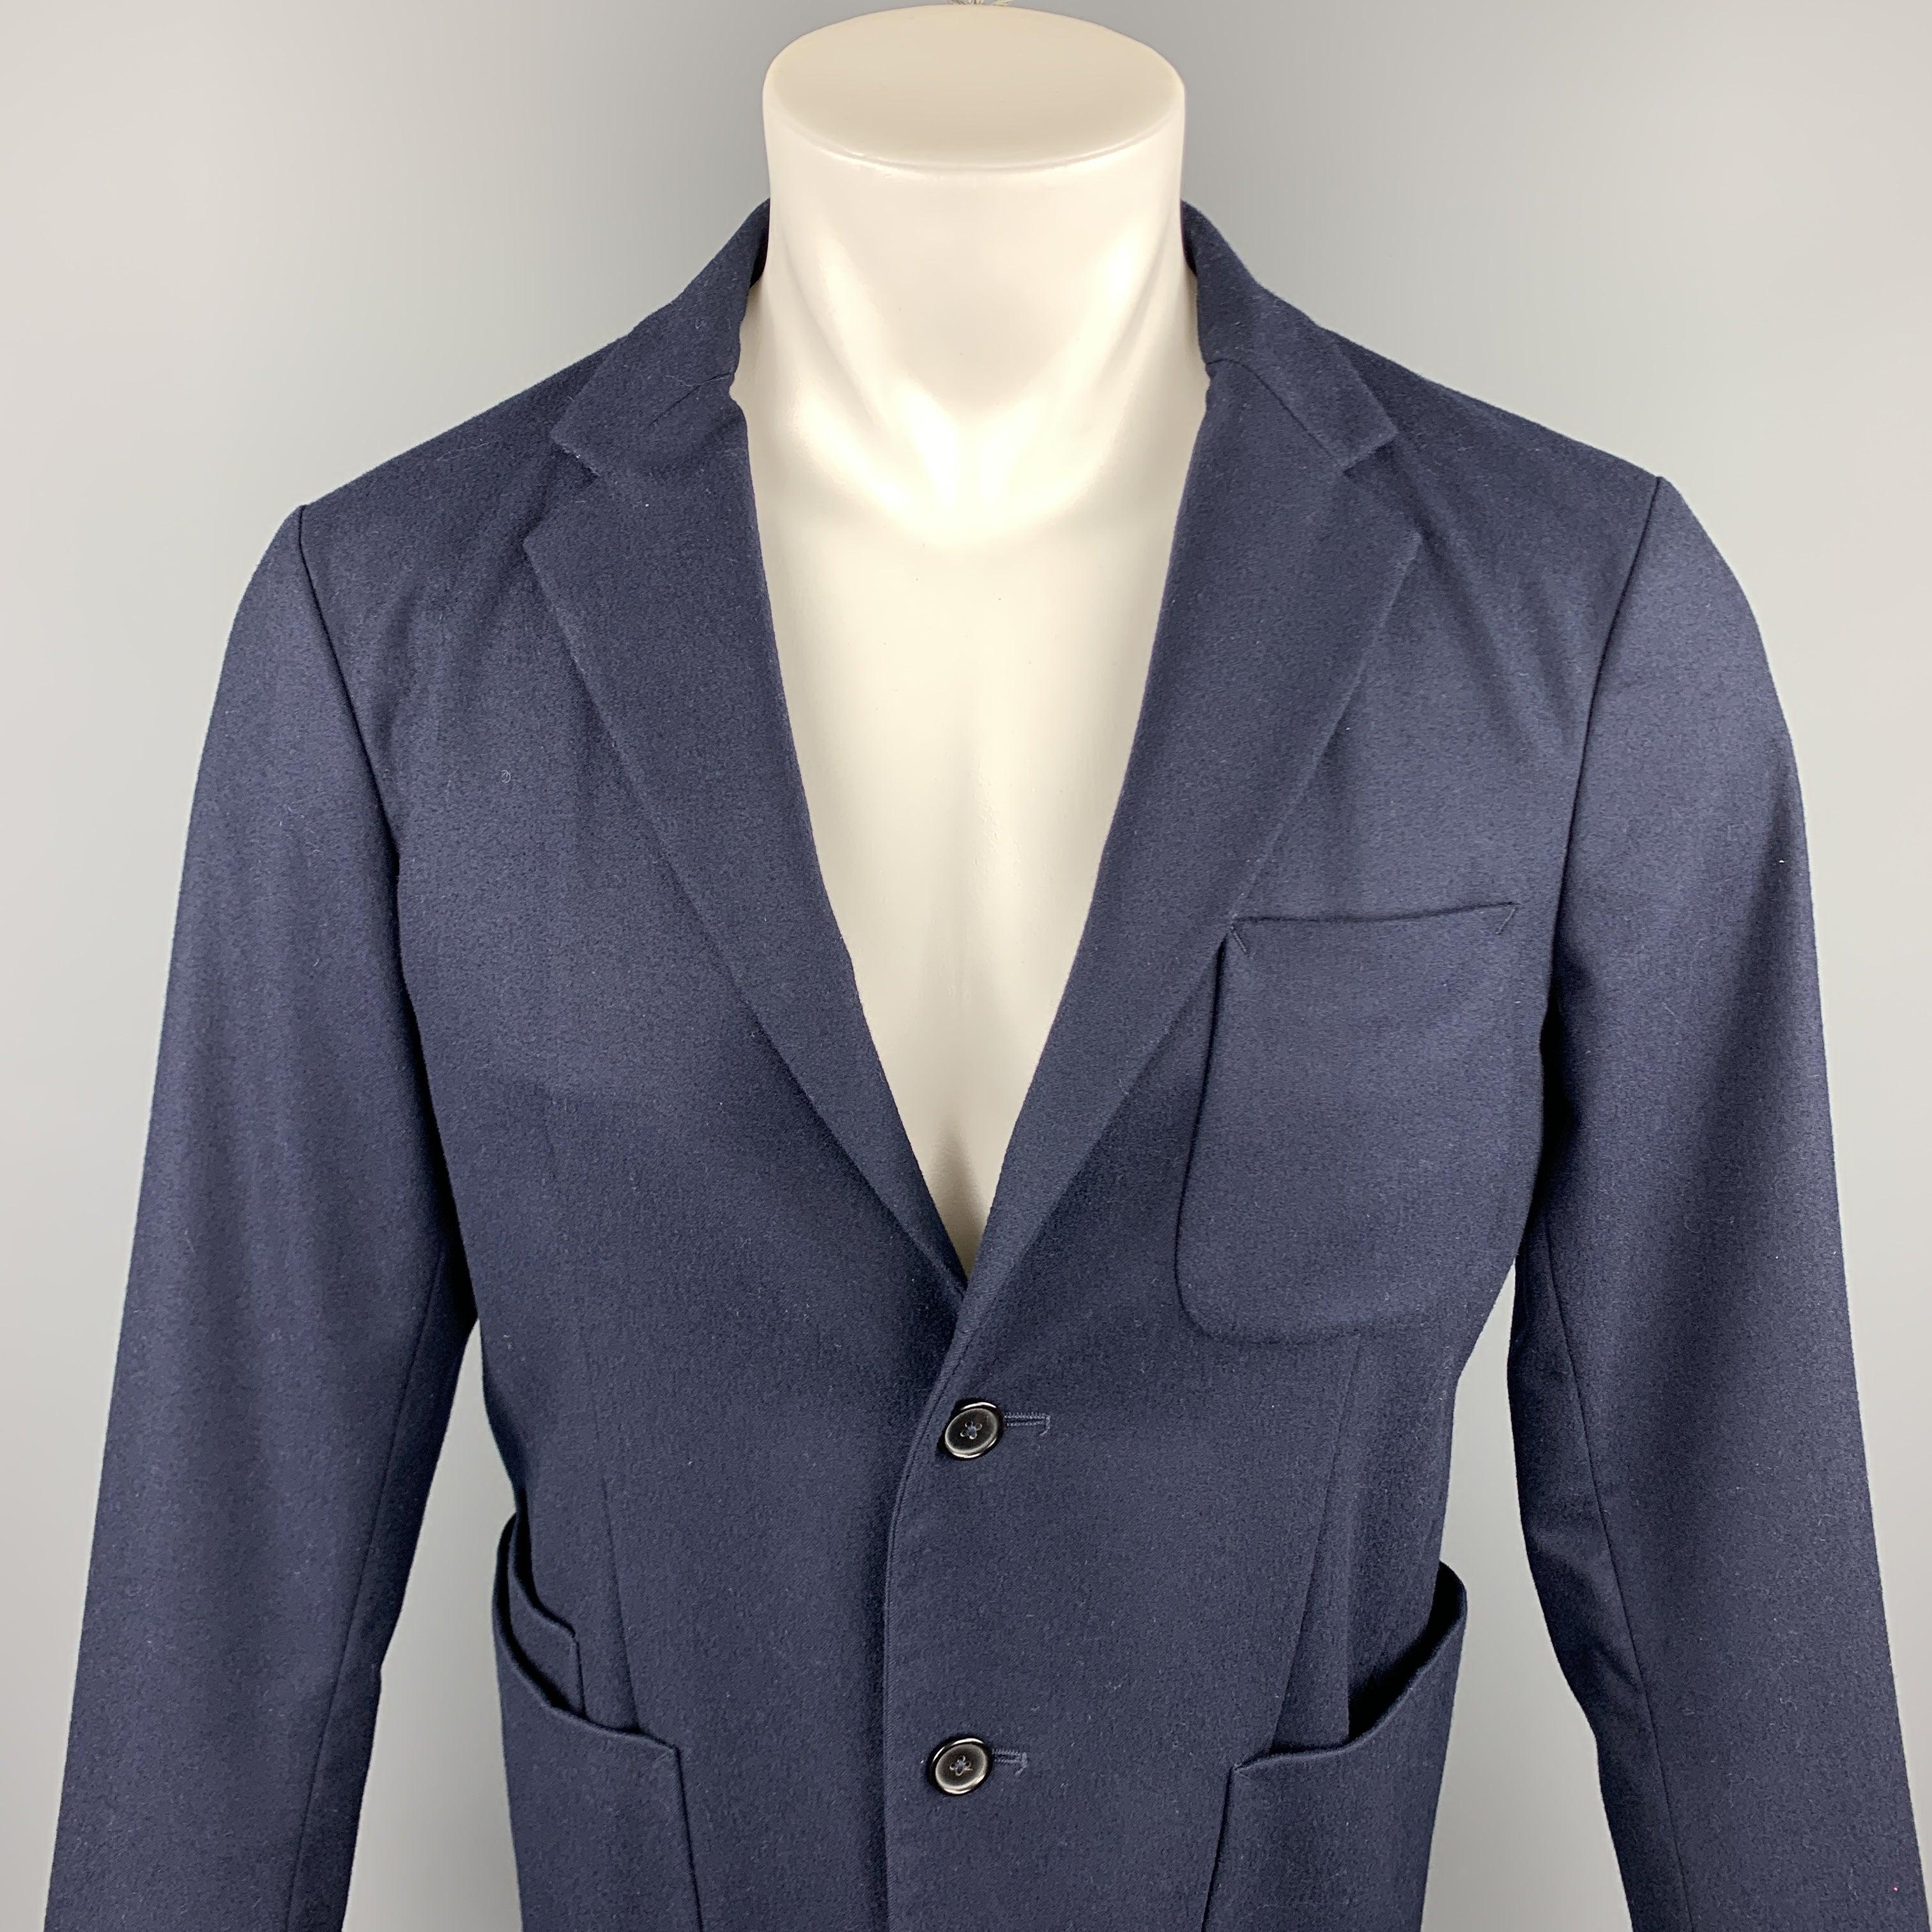 Le manteau de sport JIL SANDER est en laine marine avec un dos en néoprène noir. Il présente un revers à cran, des poches plaquées et une fermeture à deux boutons. Fabriqué en Italie.
Etat d'occasion. 

Marqué :   IT 48 

Mesures : 
 
Épaule : 17.5